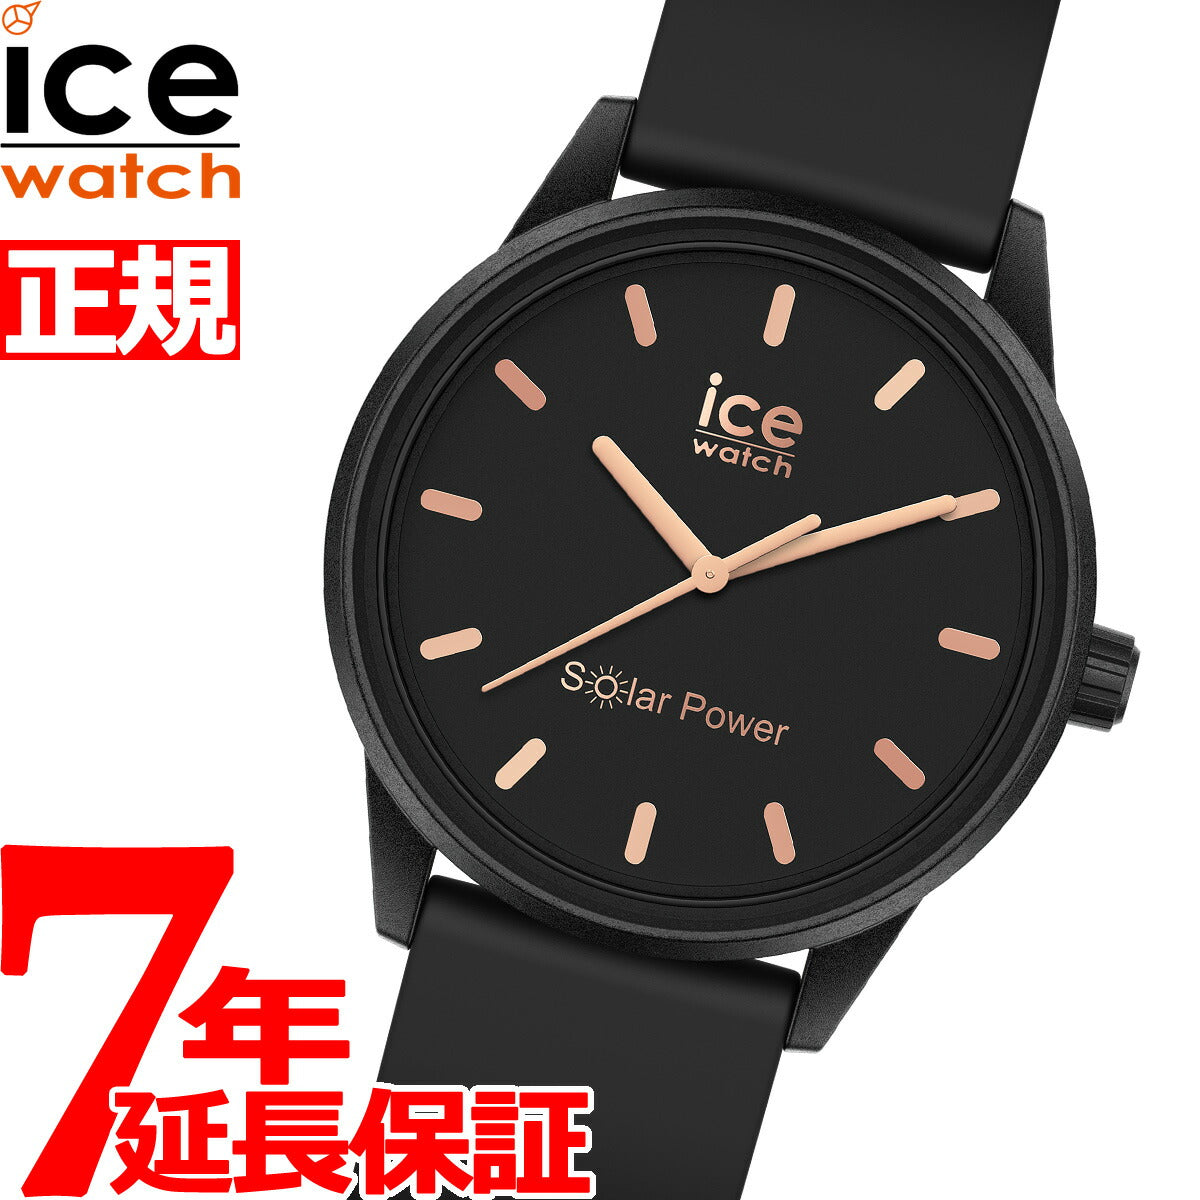 アイスウォッチ ICE-WATCH 腕時計 メンズ レディース アイスソーラーパワー ICE solar power スモール ブラックローズゴールド 018476